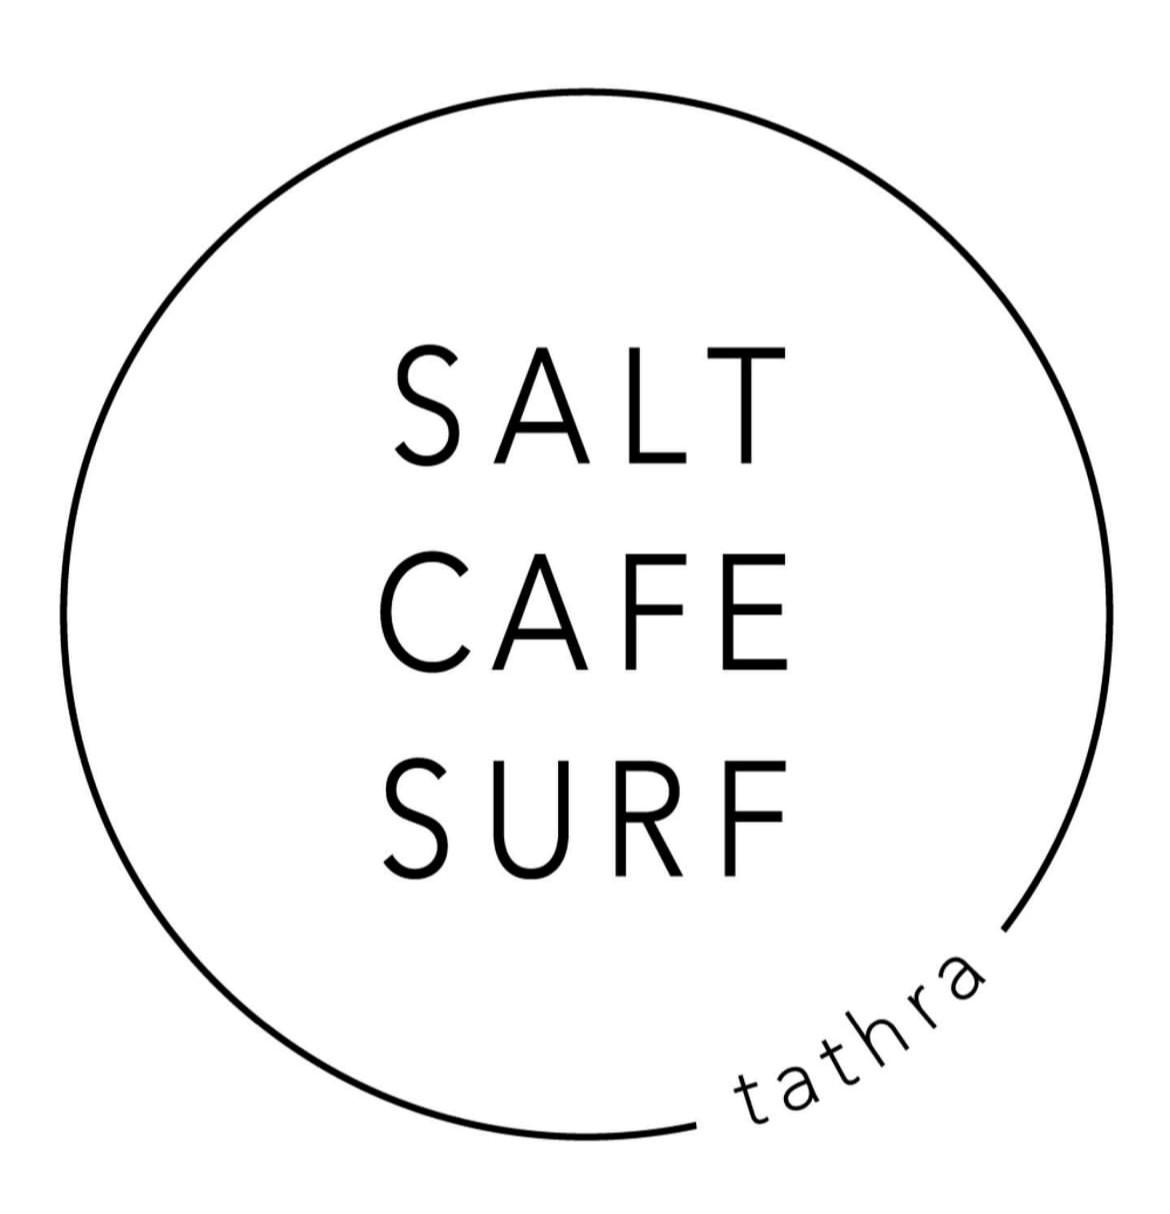 SALT CAFE SURF